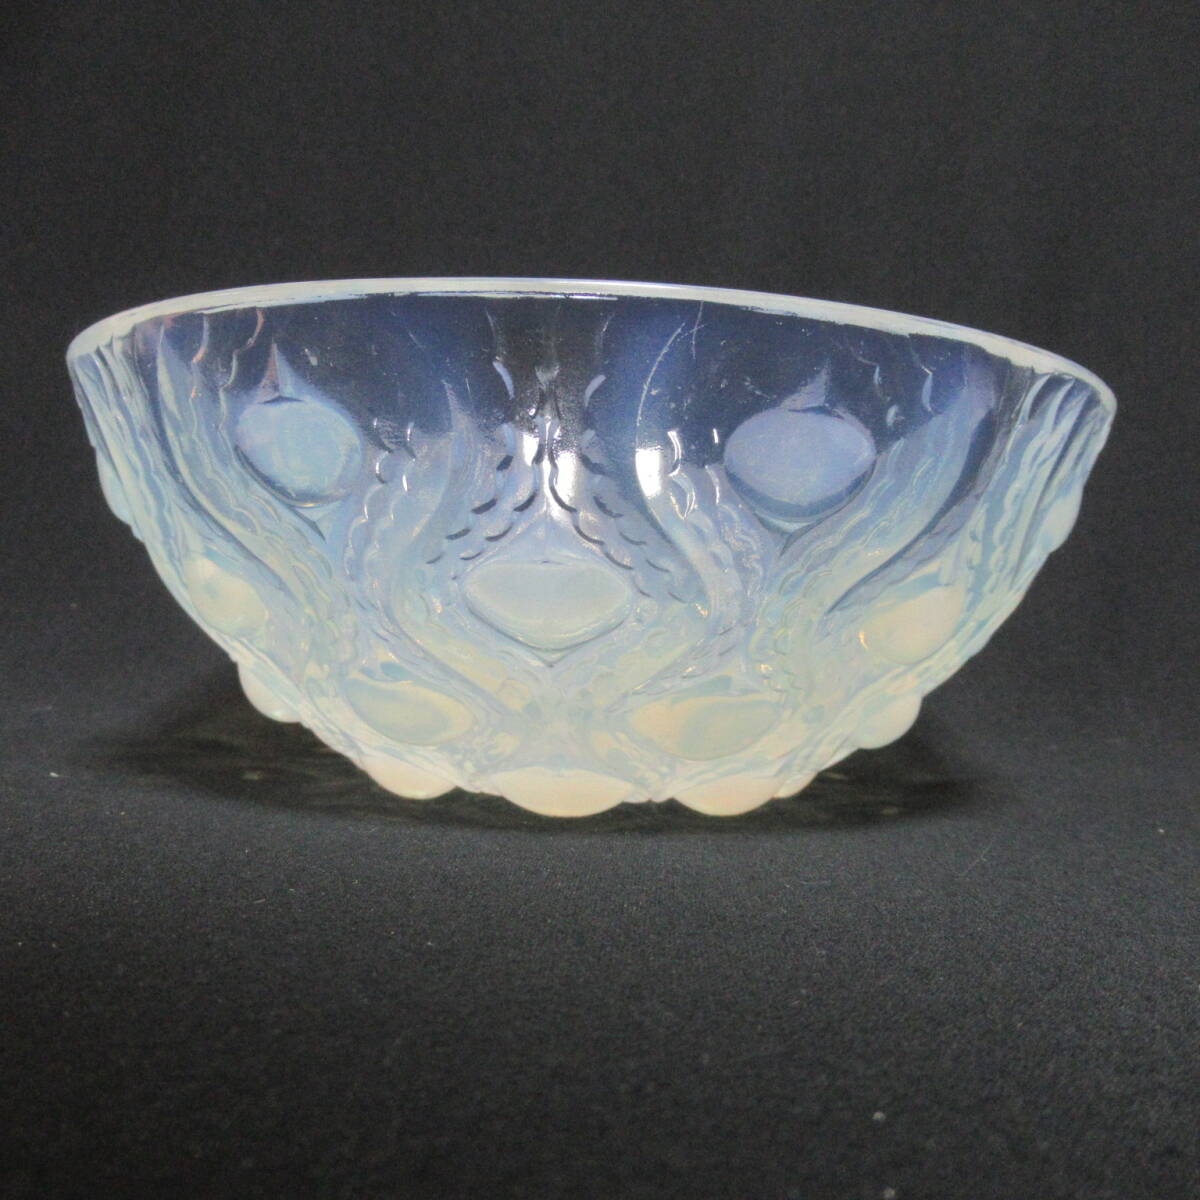  Rene *lalik миска Bulbes No.2 crystal стекло античный посуда европейская посуда Lalique 80 размер отправка w-2722130-078-mrrz